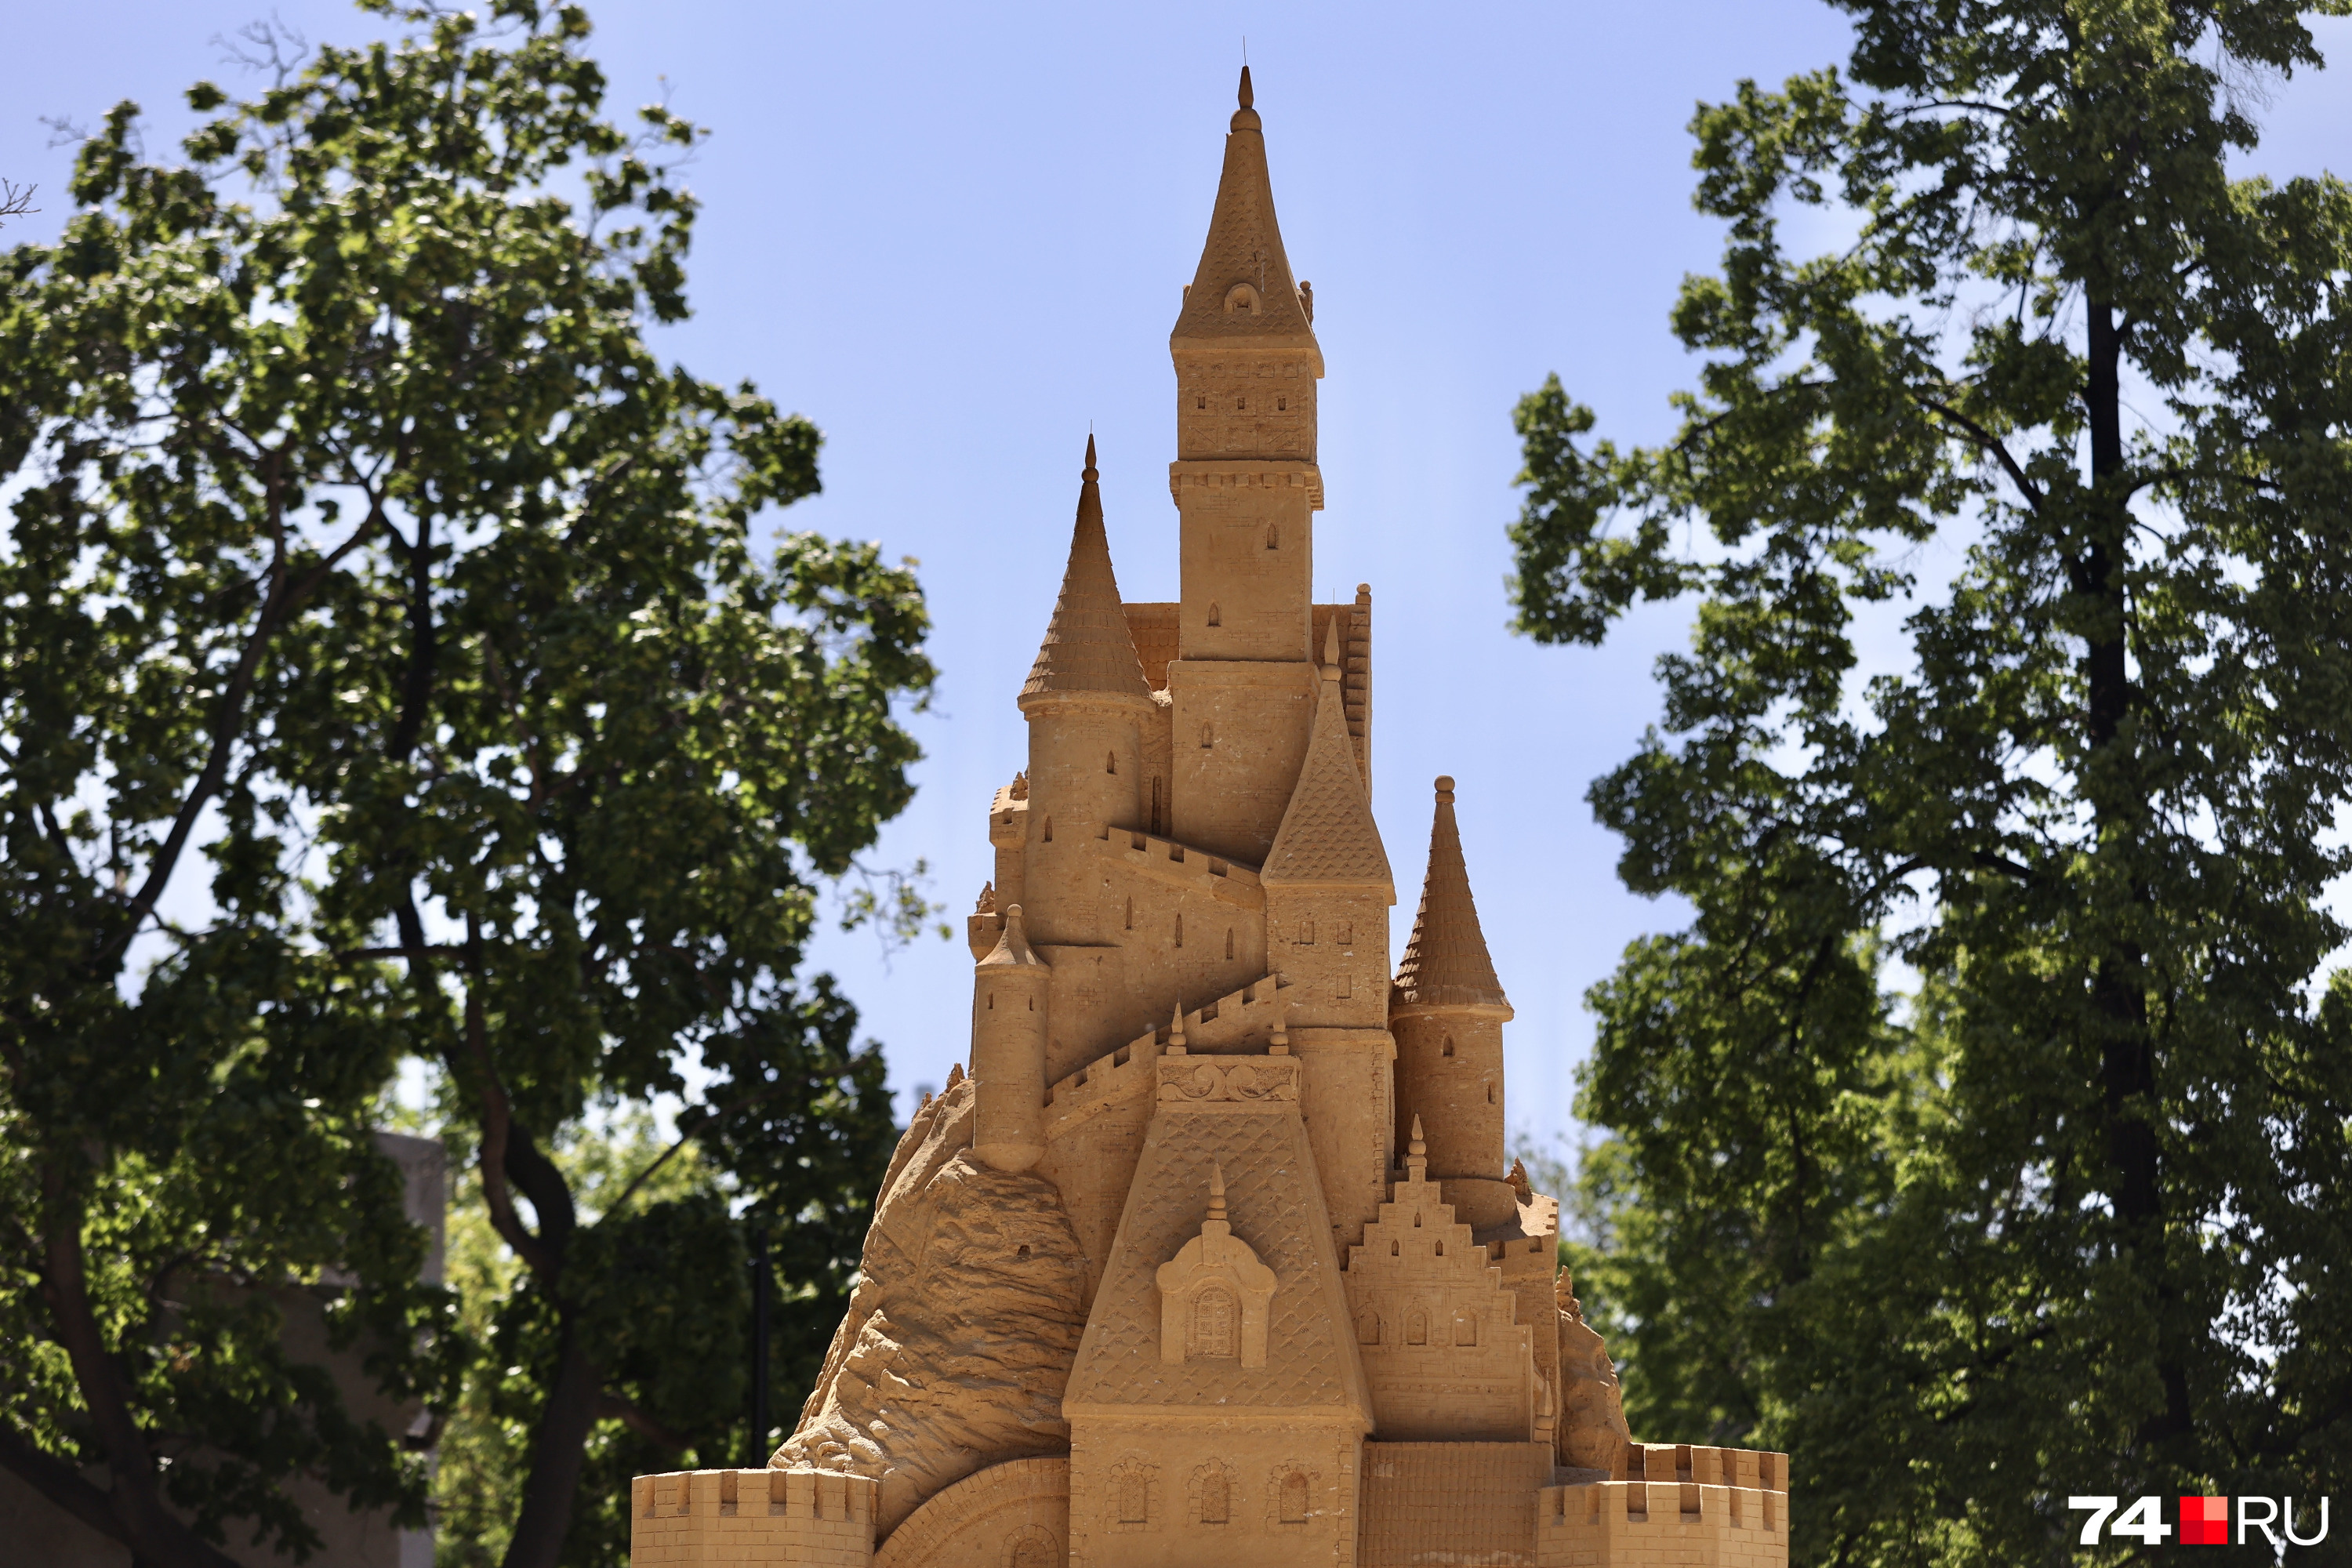 Самая большая скульптура — сказочный замок, его высота — 6,5 метра